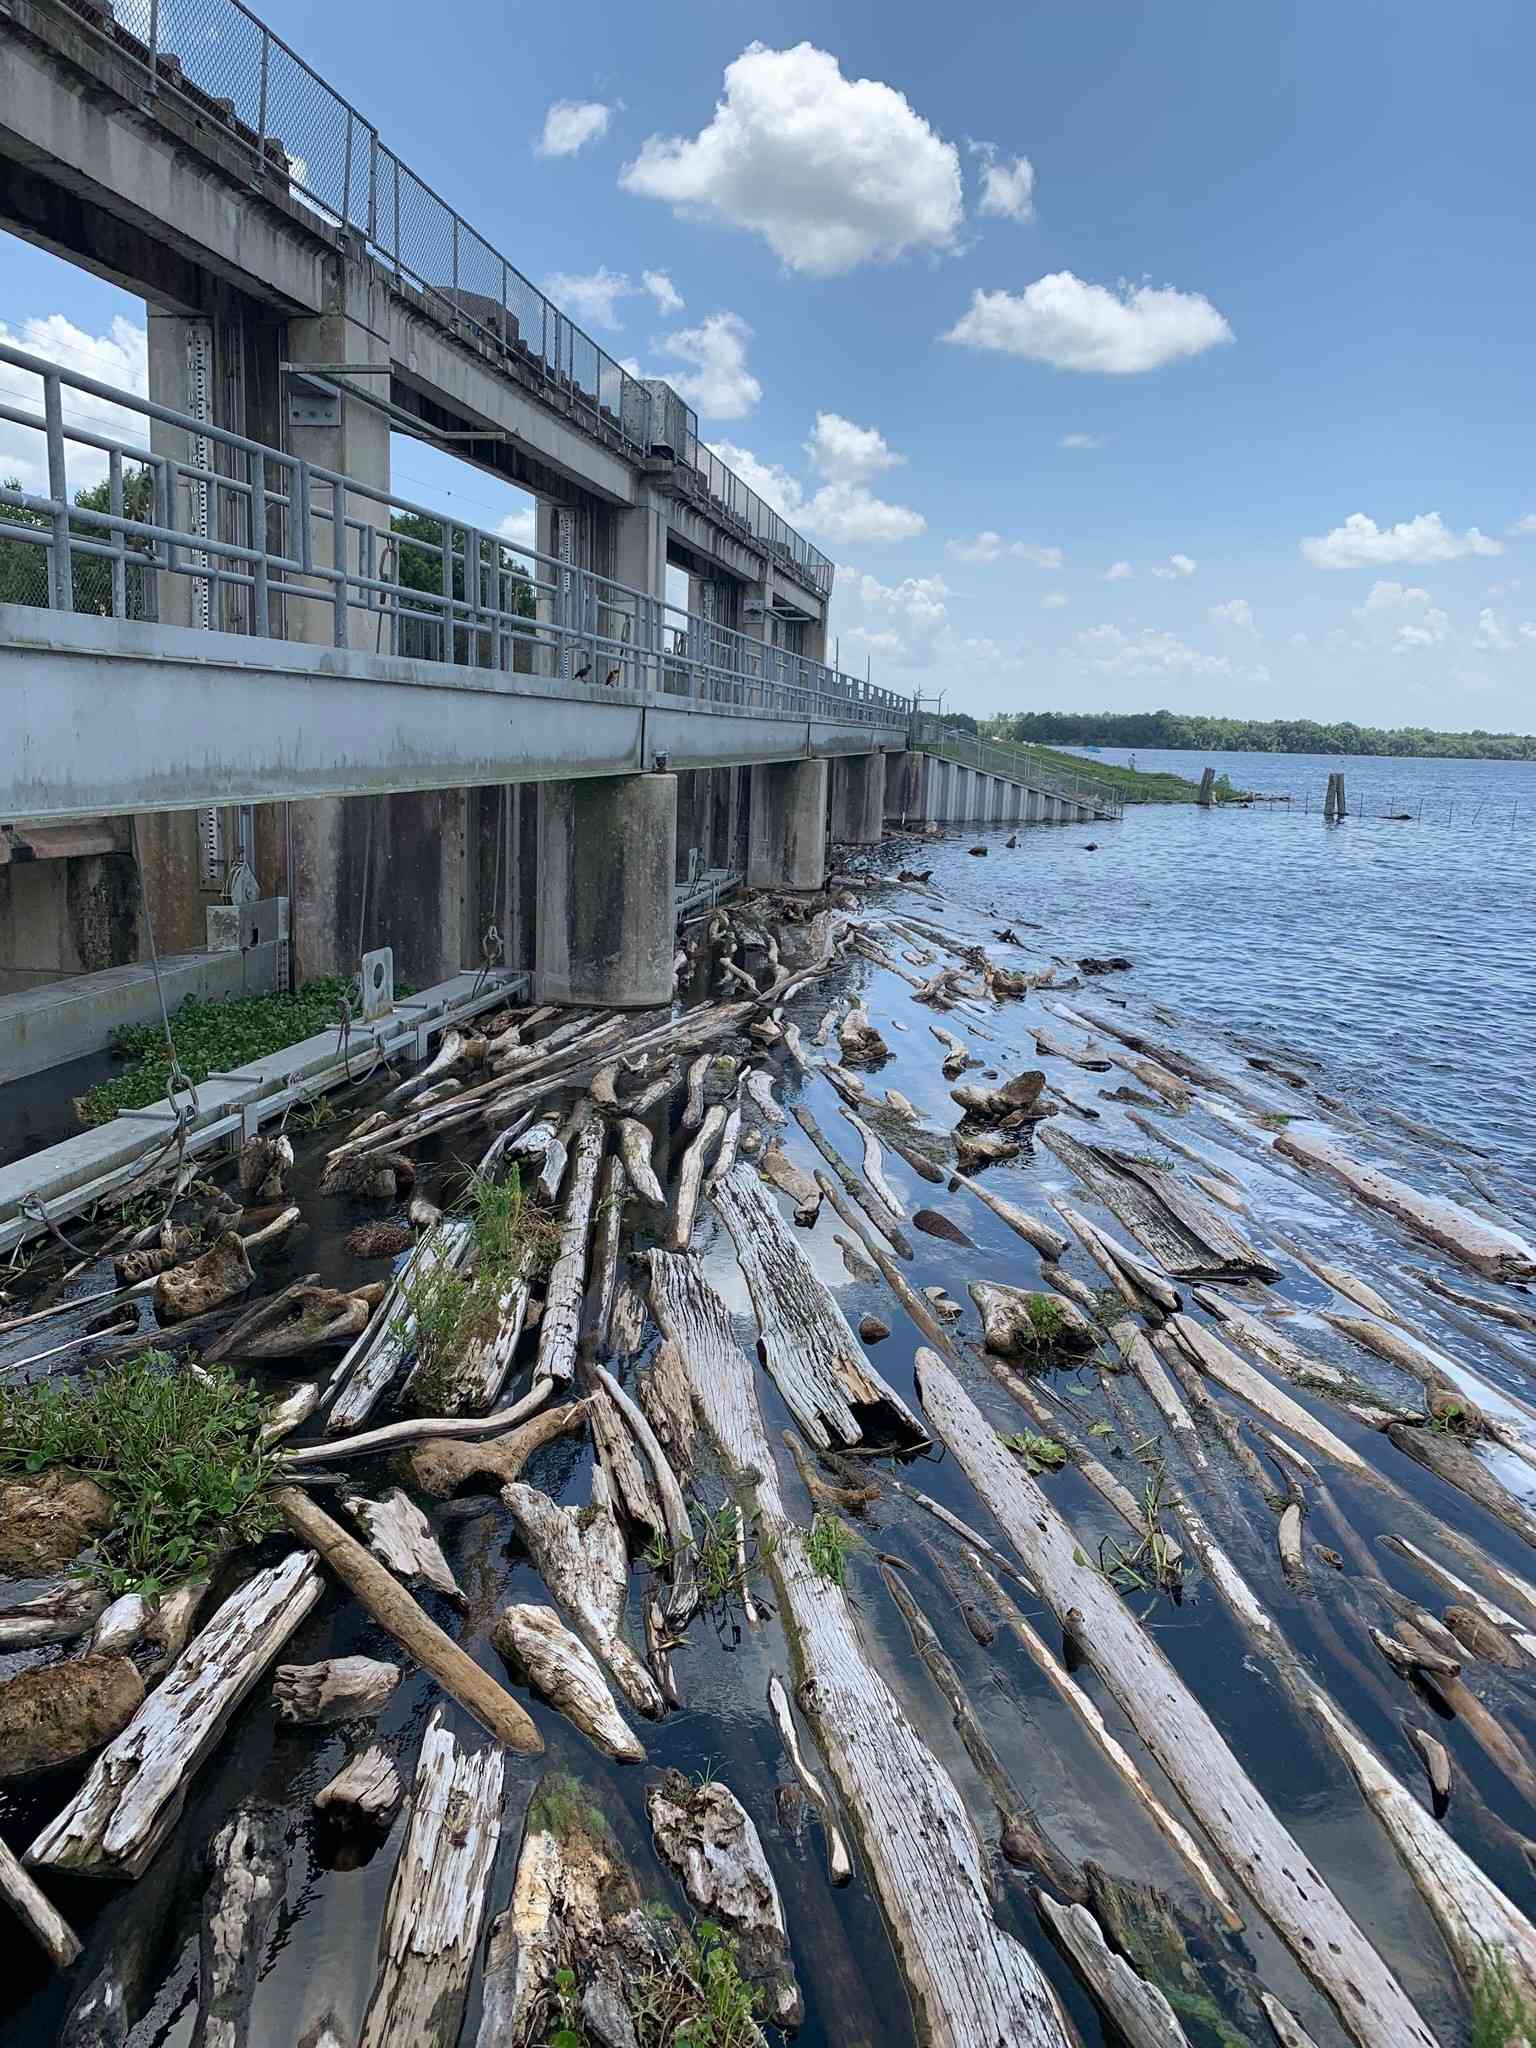 Logs piled around the dam